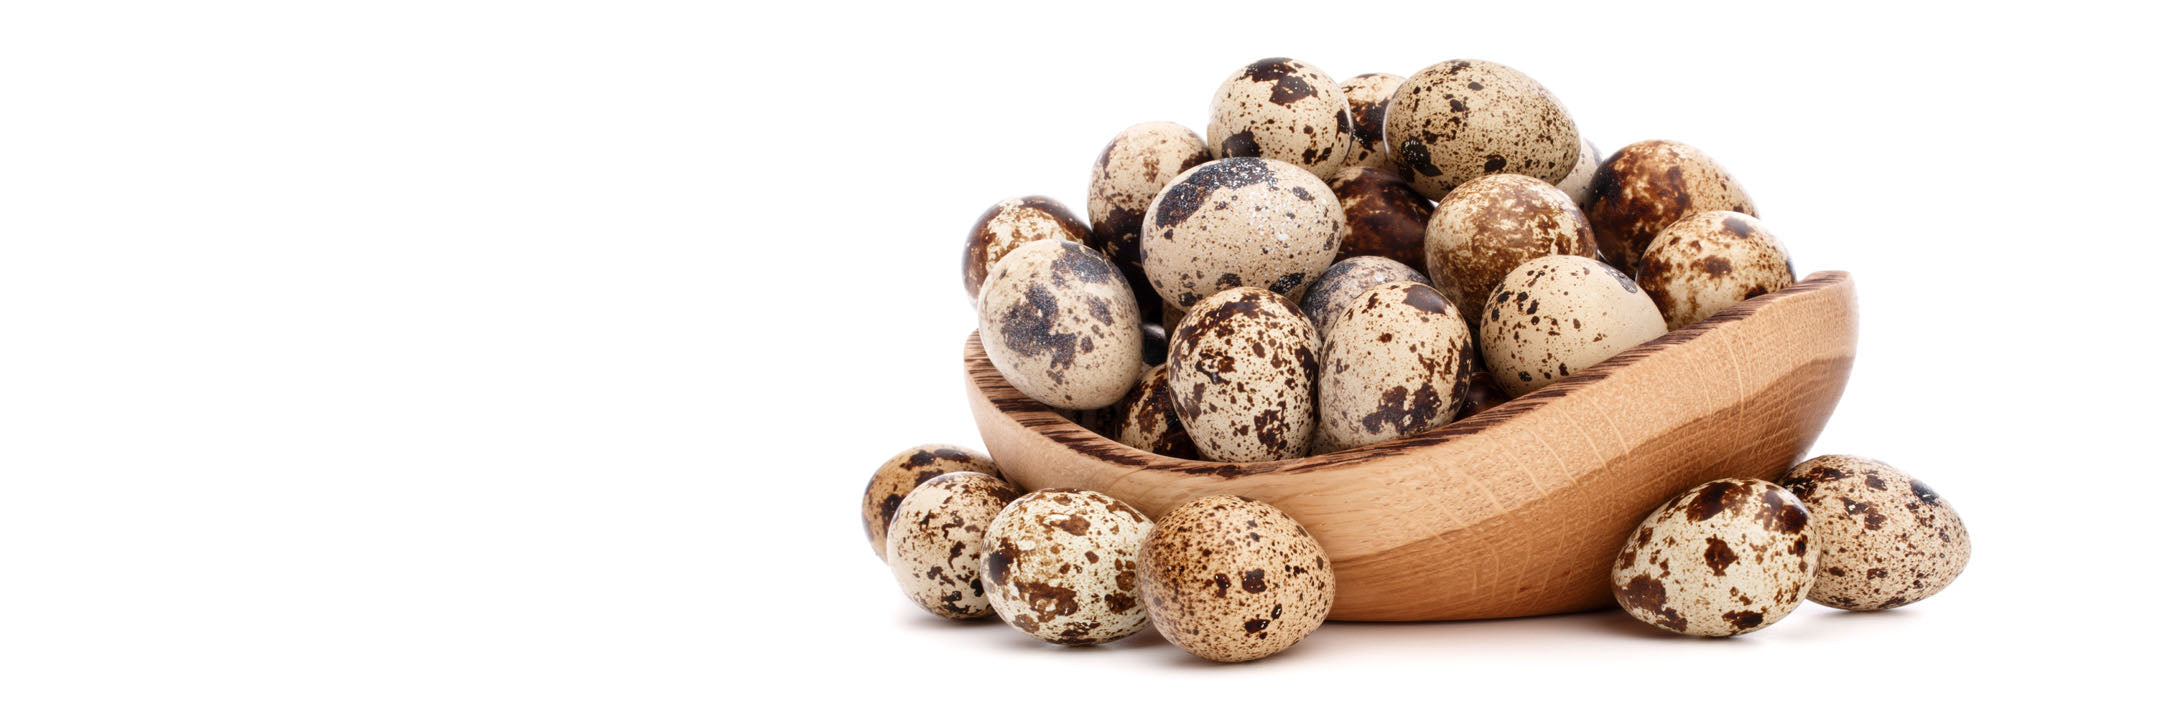 Image of a bowl of fresh quail eggs